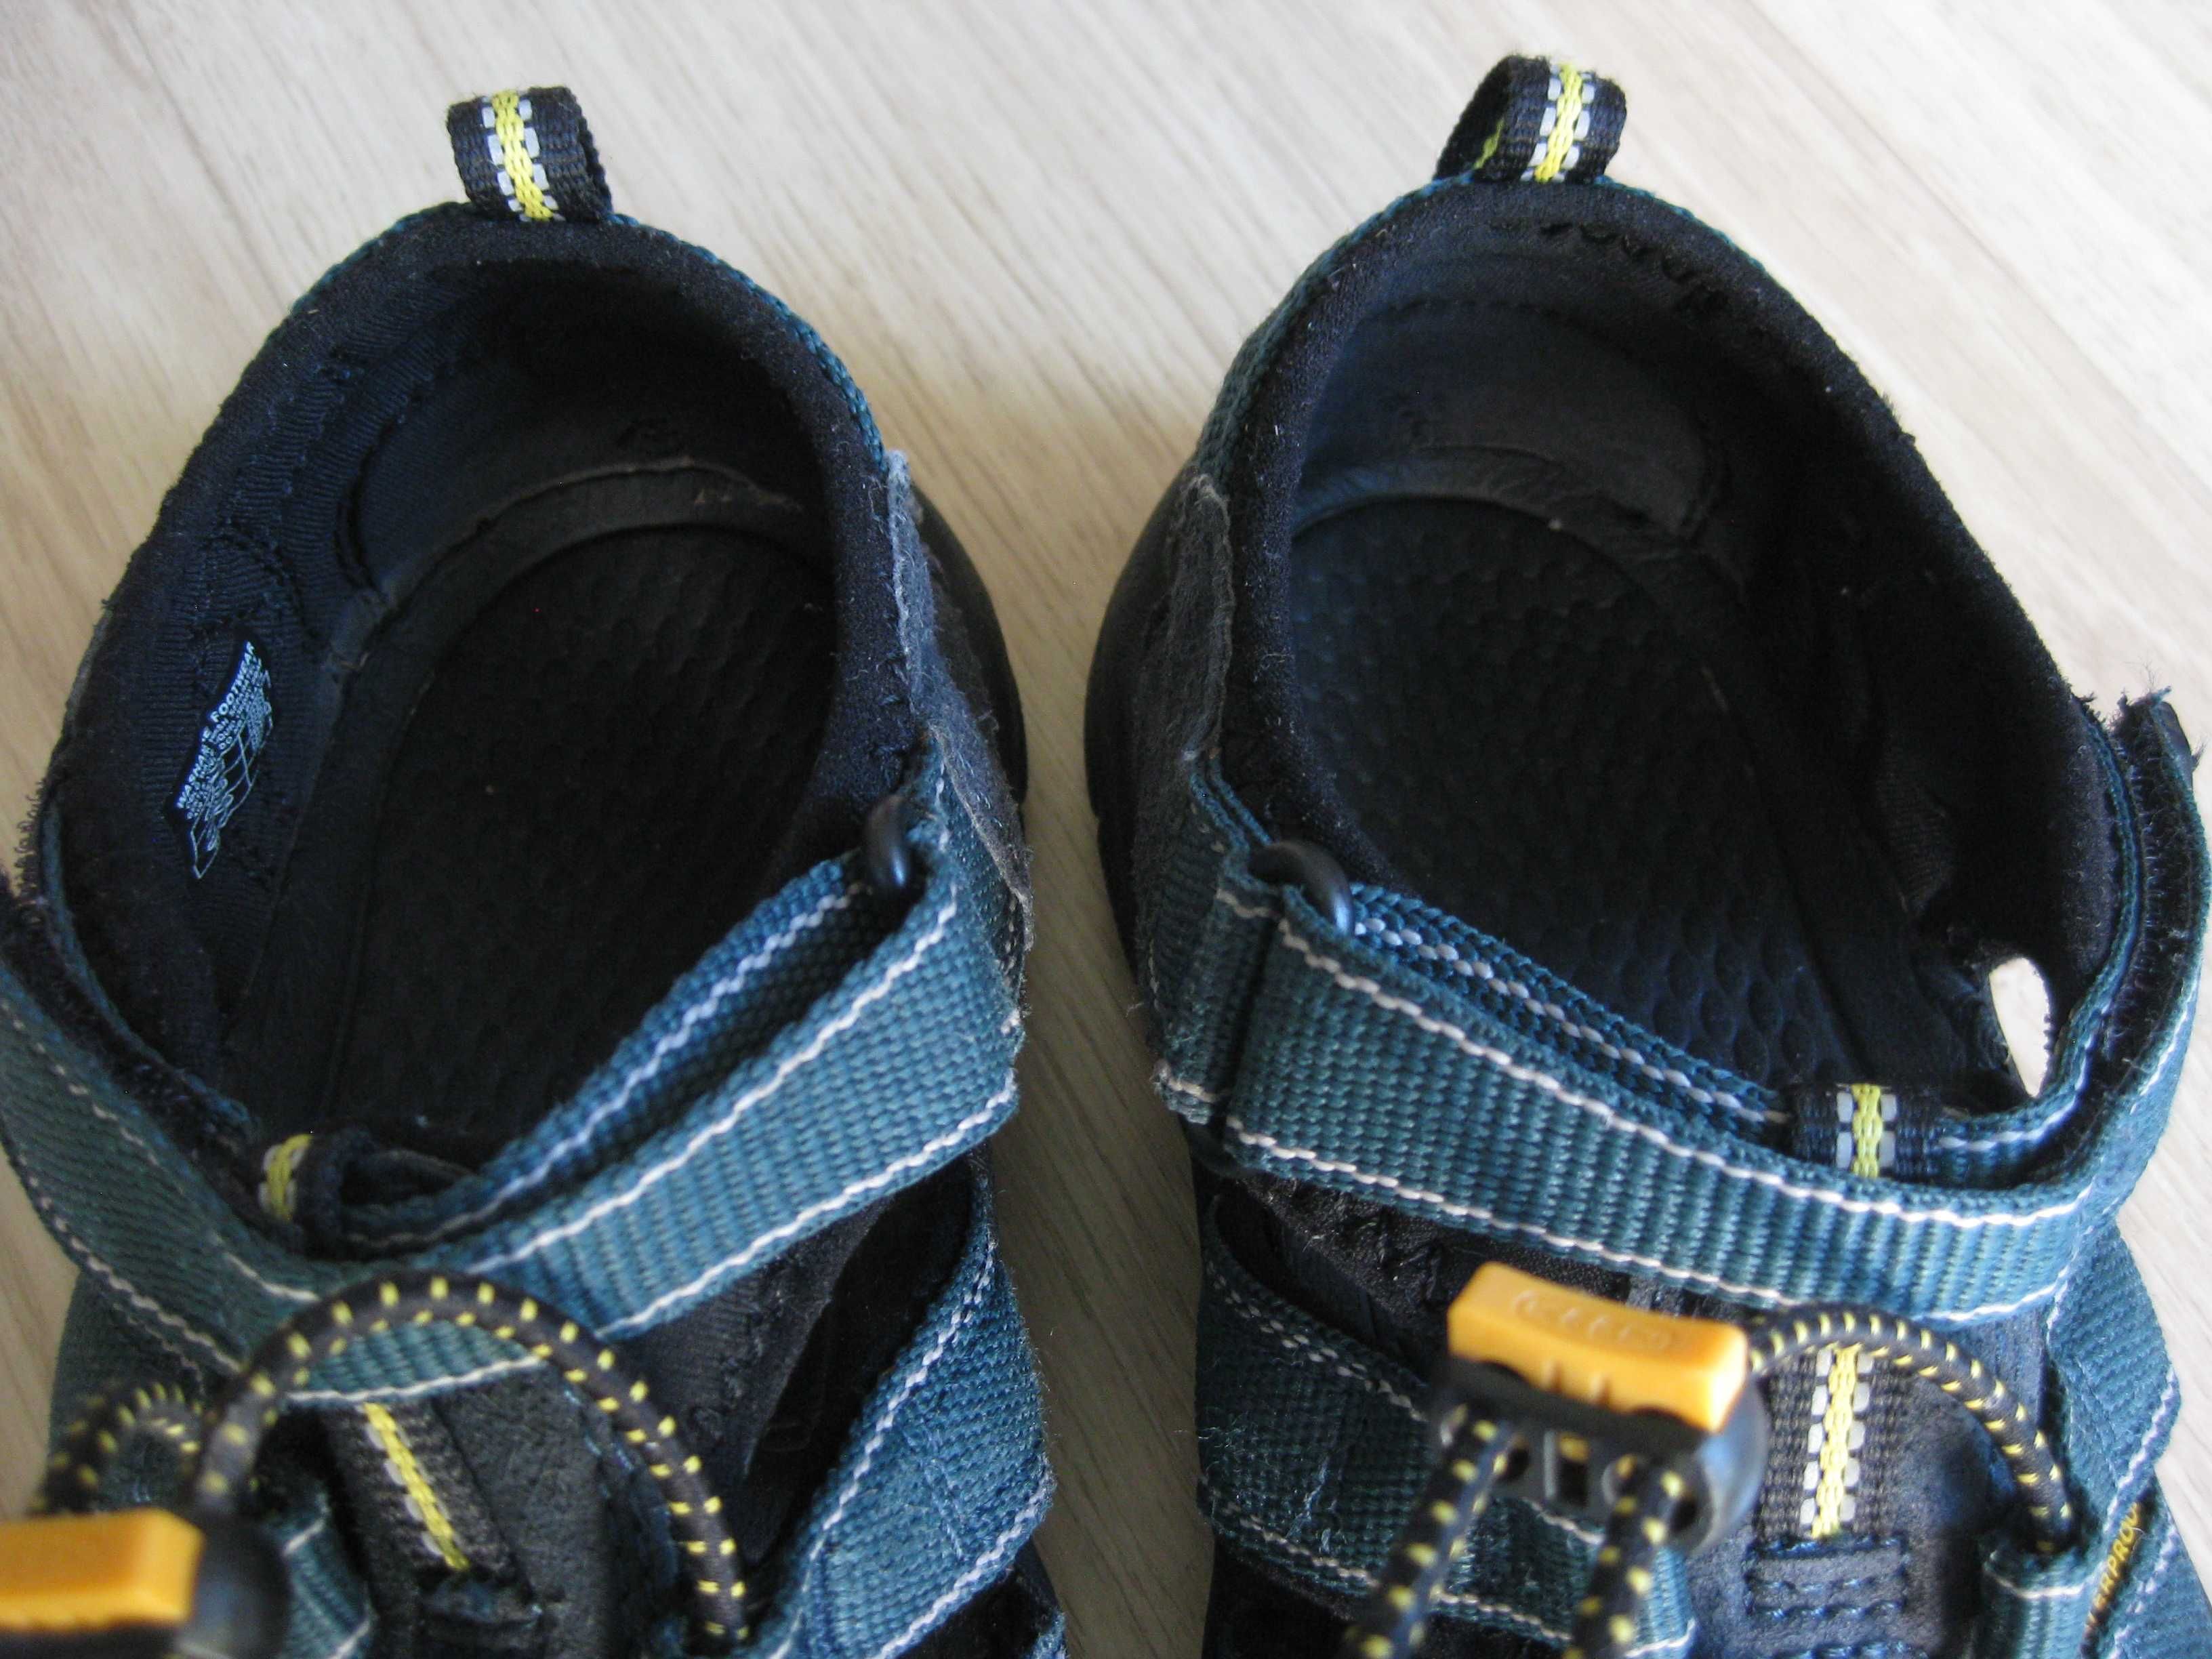 KEEN Newport rozmiar 37 sandałki dla chłopca długość wkładki 22,5 cm